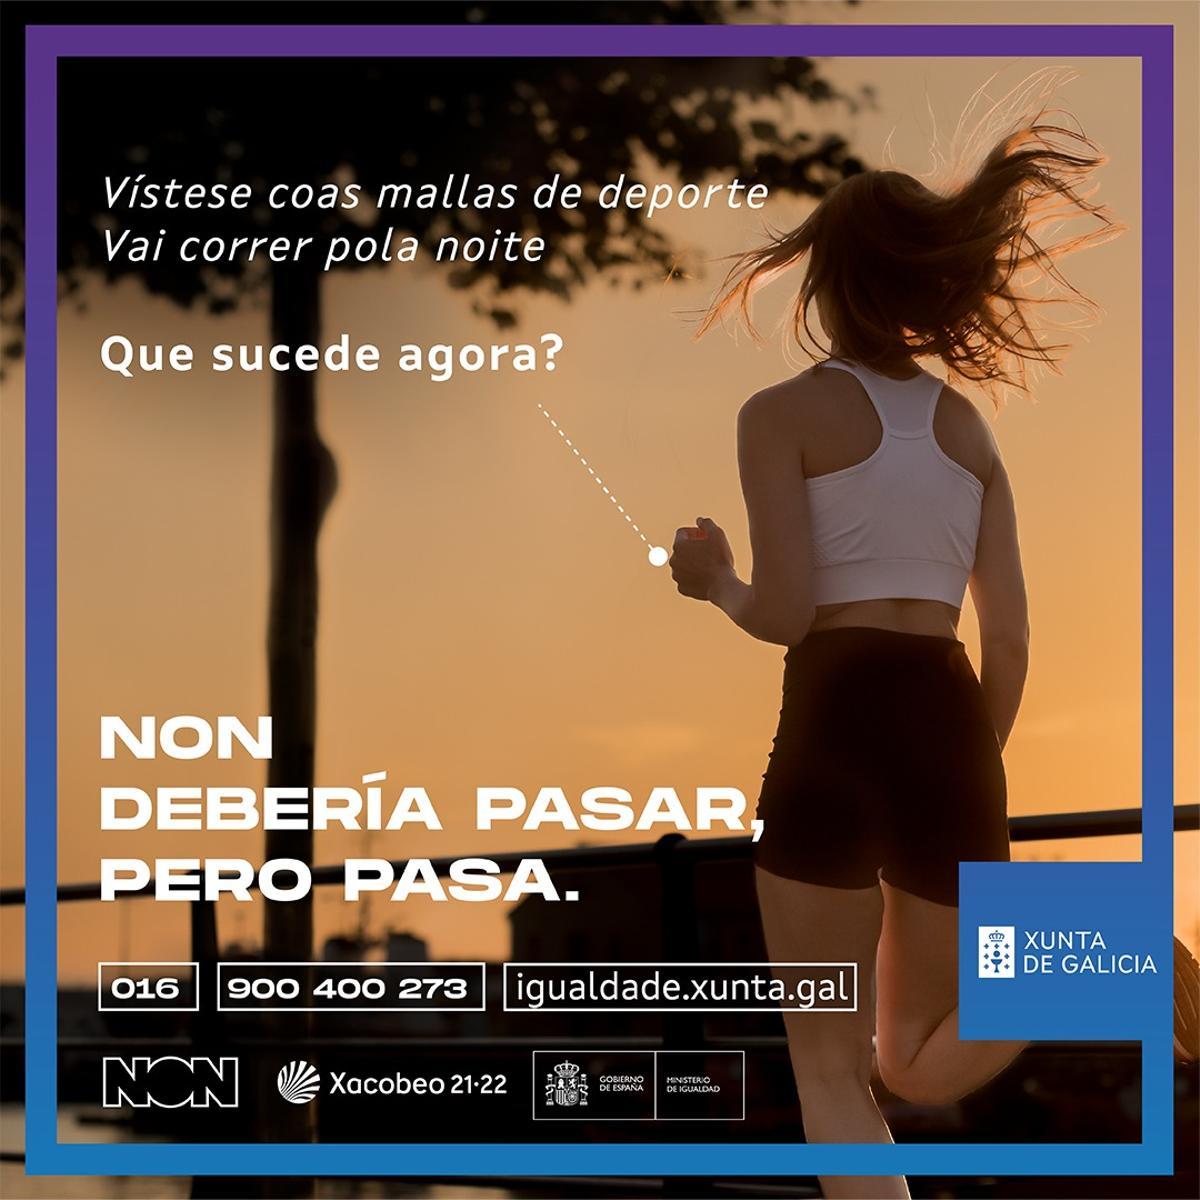 Imagen de la cuenta de Twitter de la Xunta de la campaña publicitaria del Gobierno gallego contra la violencia de género. EFE